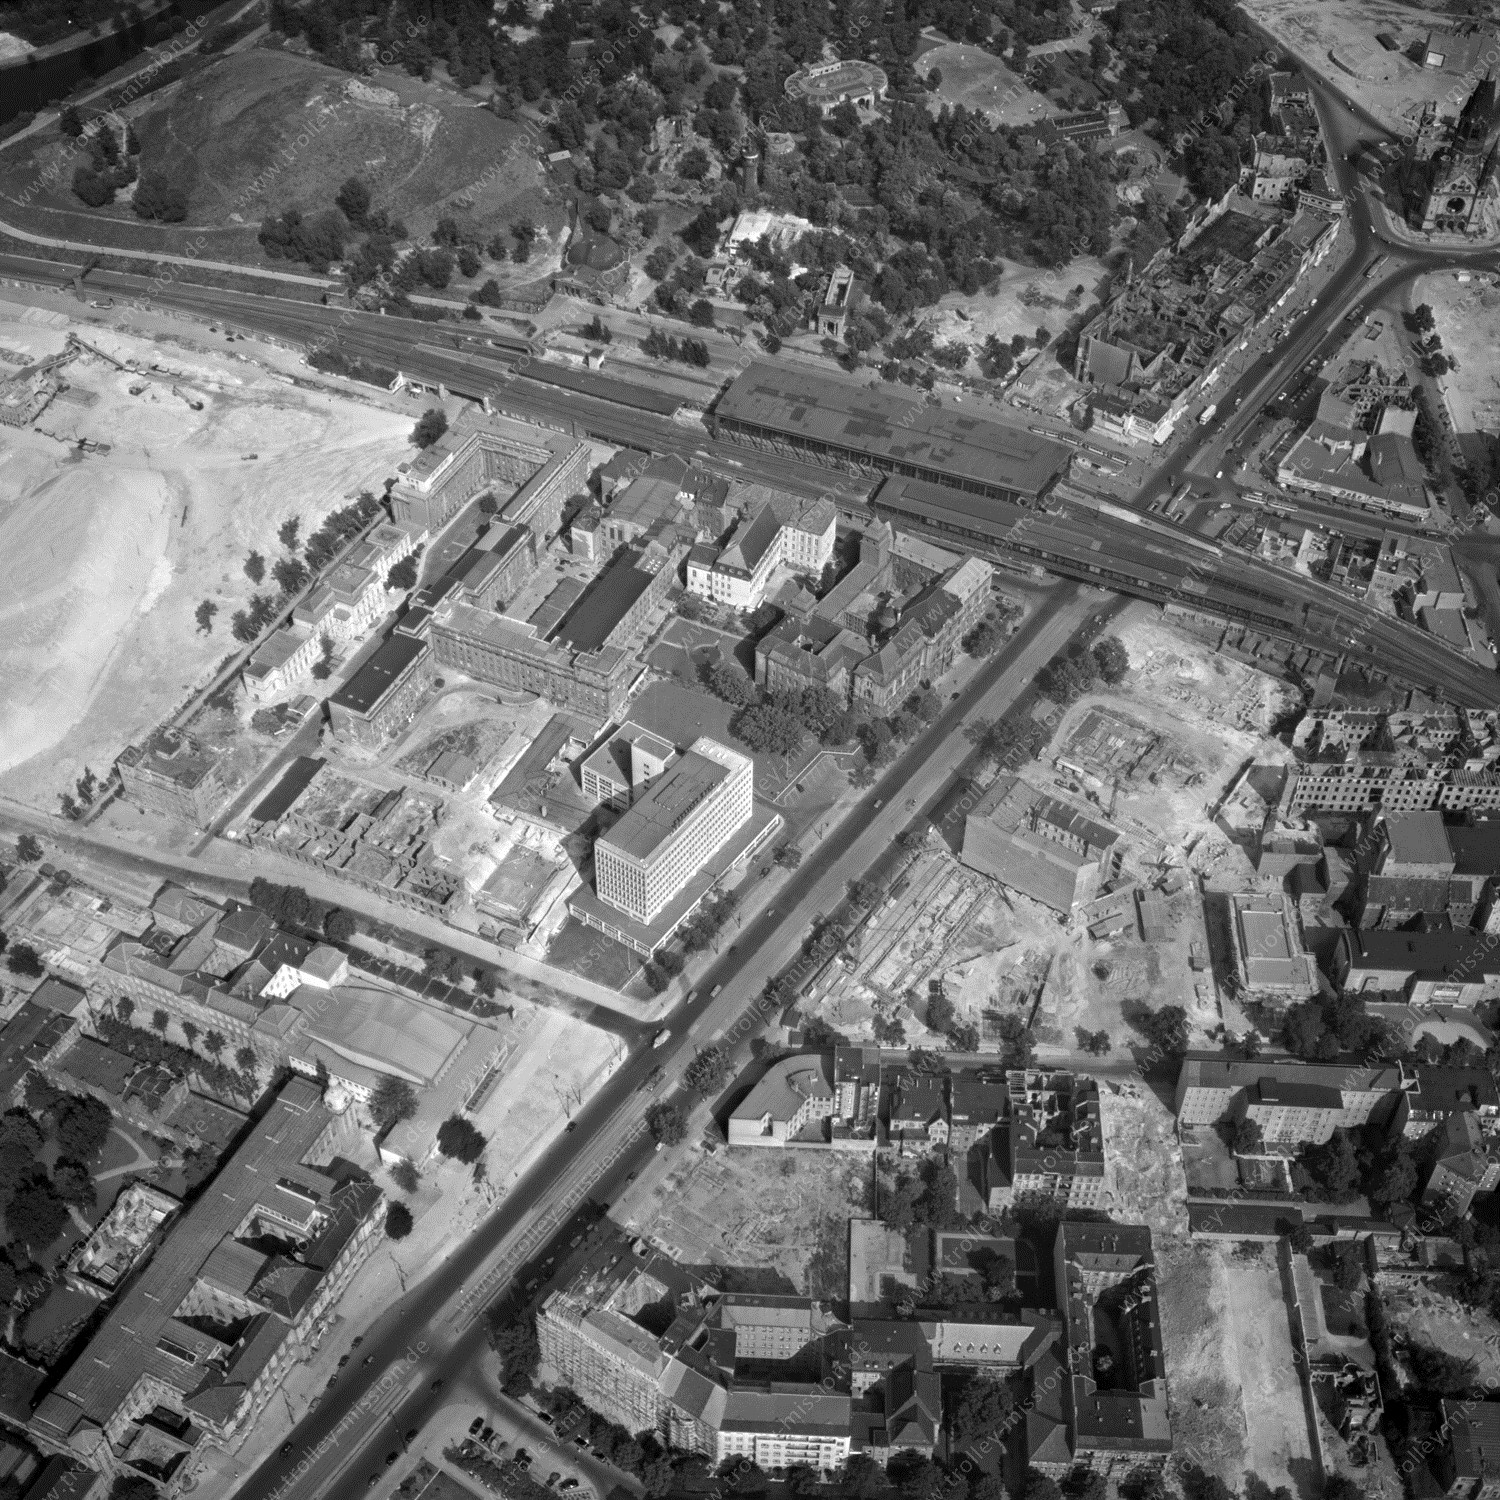 Alte Fotos und Luftbilder von Berlin - Luftbildaufnahme Nr. 02 - Historische Luftaufnahmen von West-Berlin aus dem Jahr 1954 - Flugstrecke Uniform